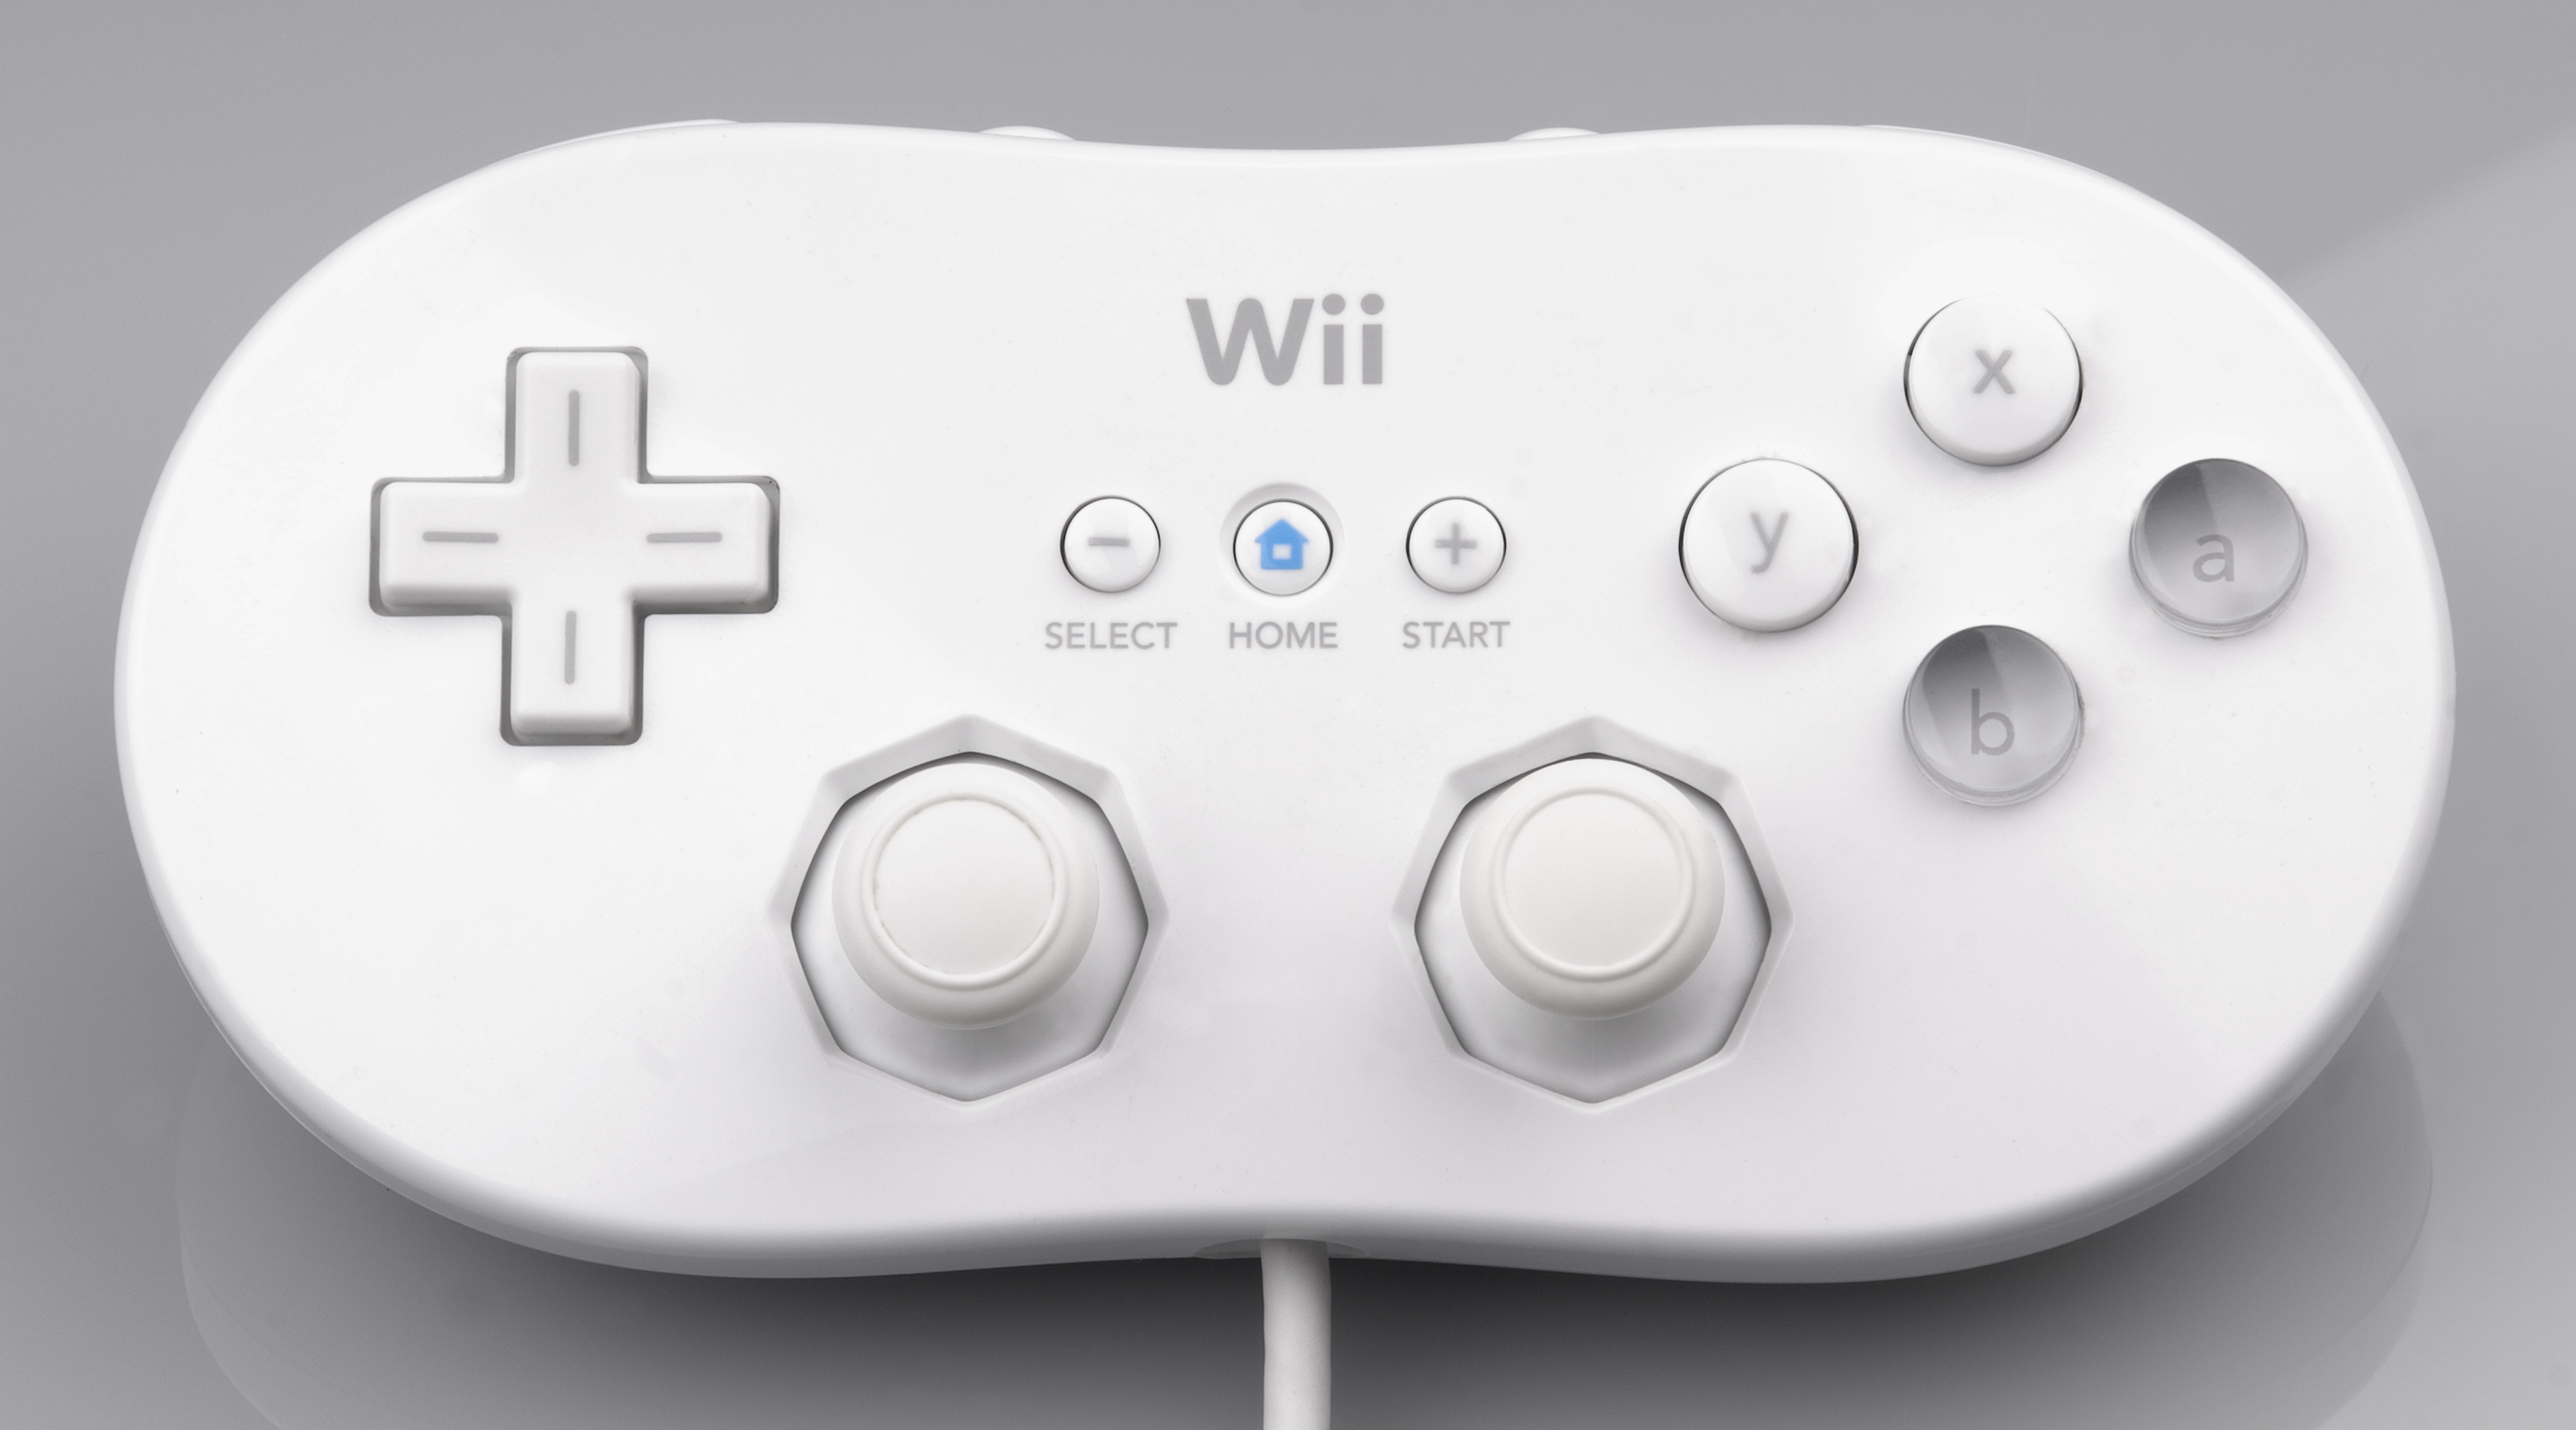 Nintendo Wii U Console - Retro vGames